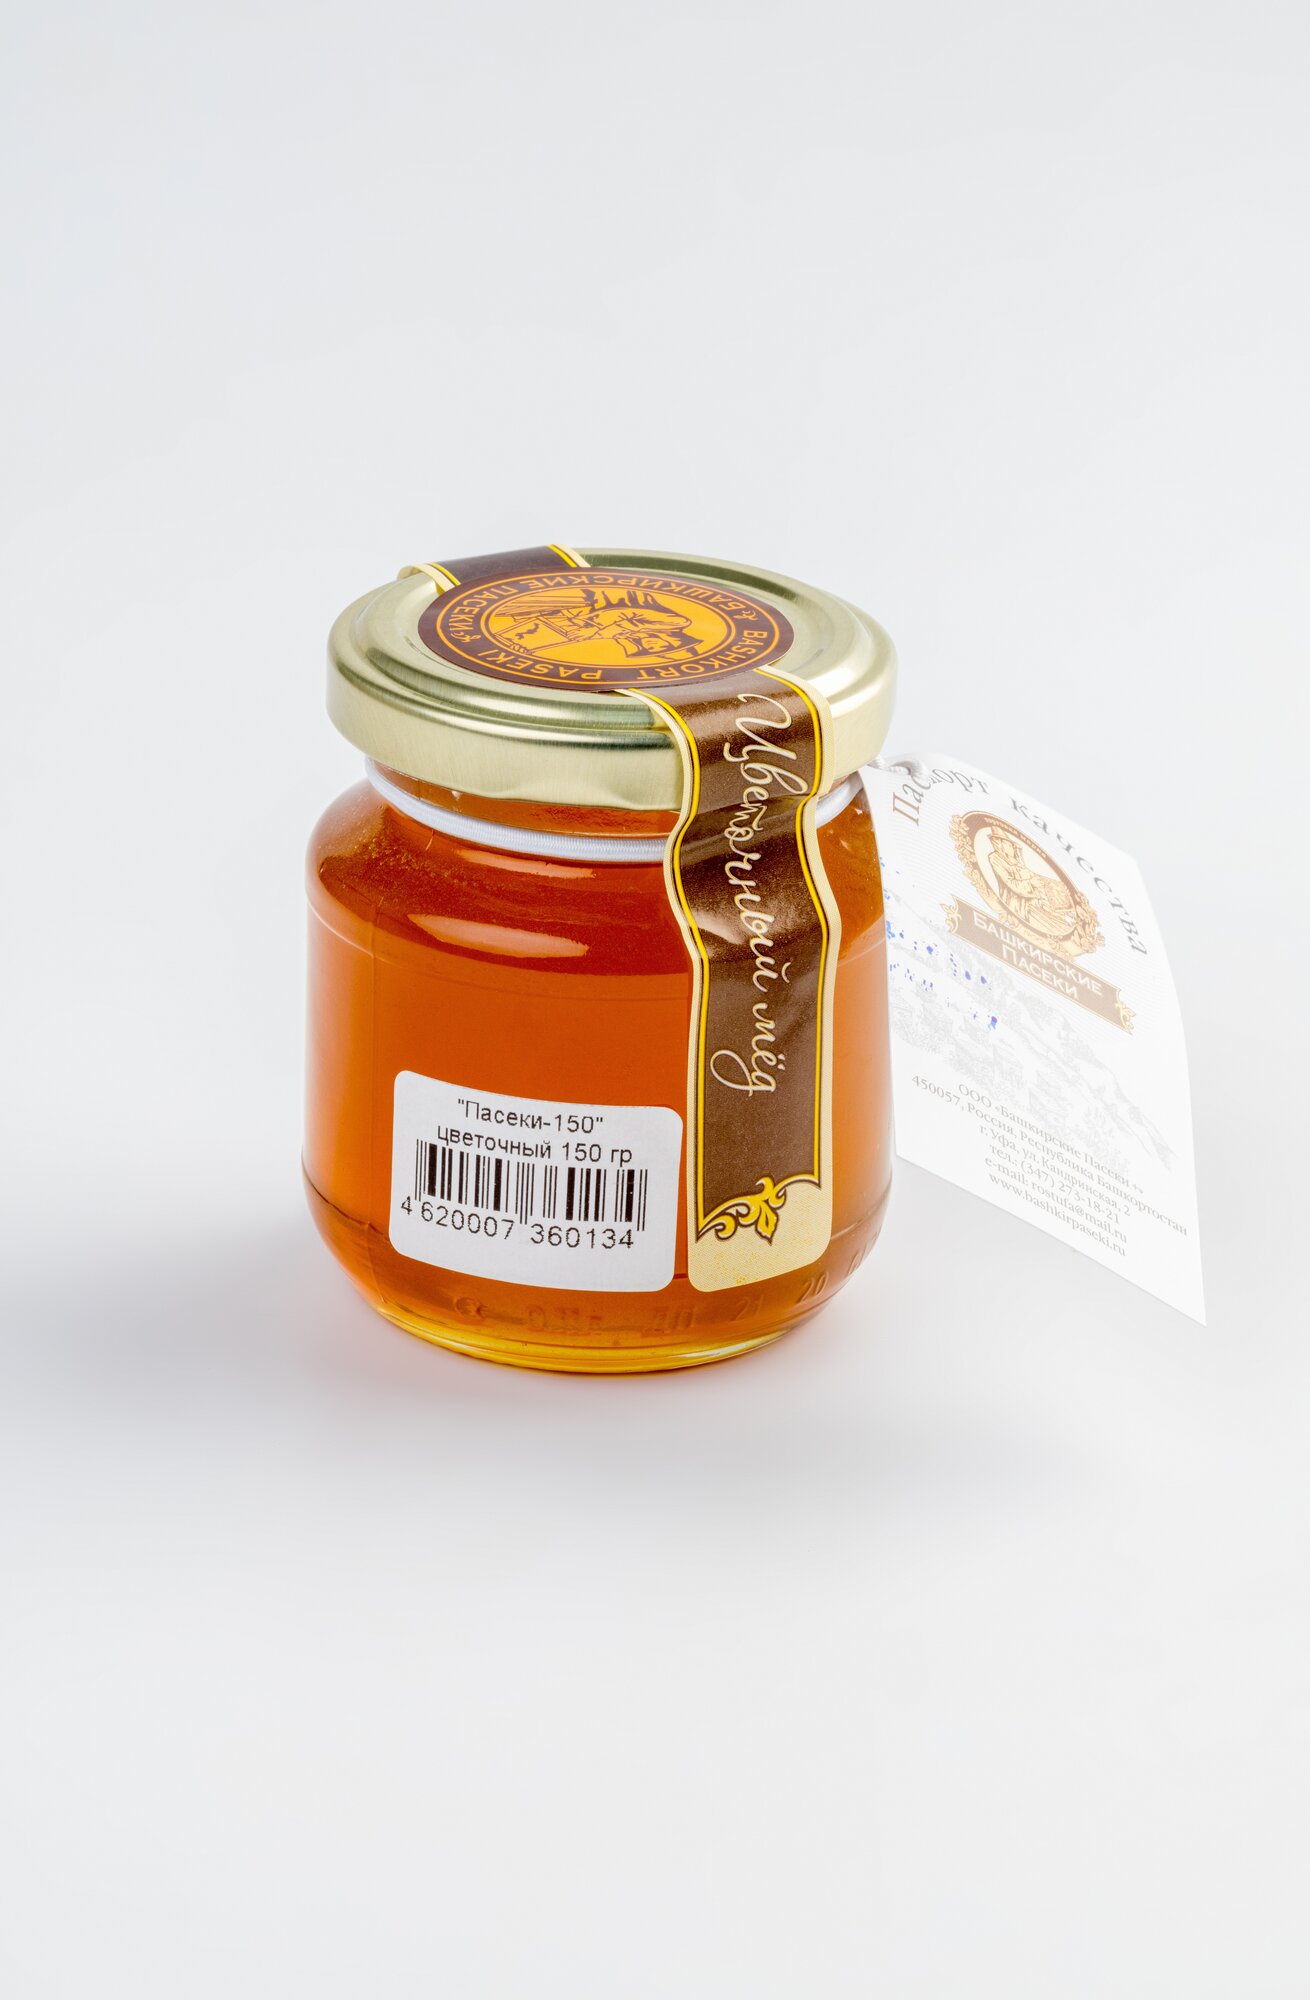 «Пасеки-150» цветочный мёд, 150 гр.